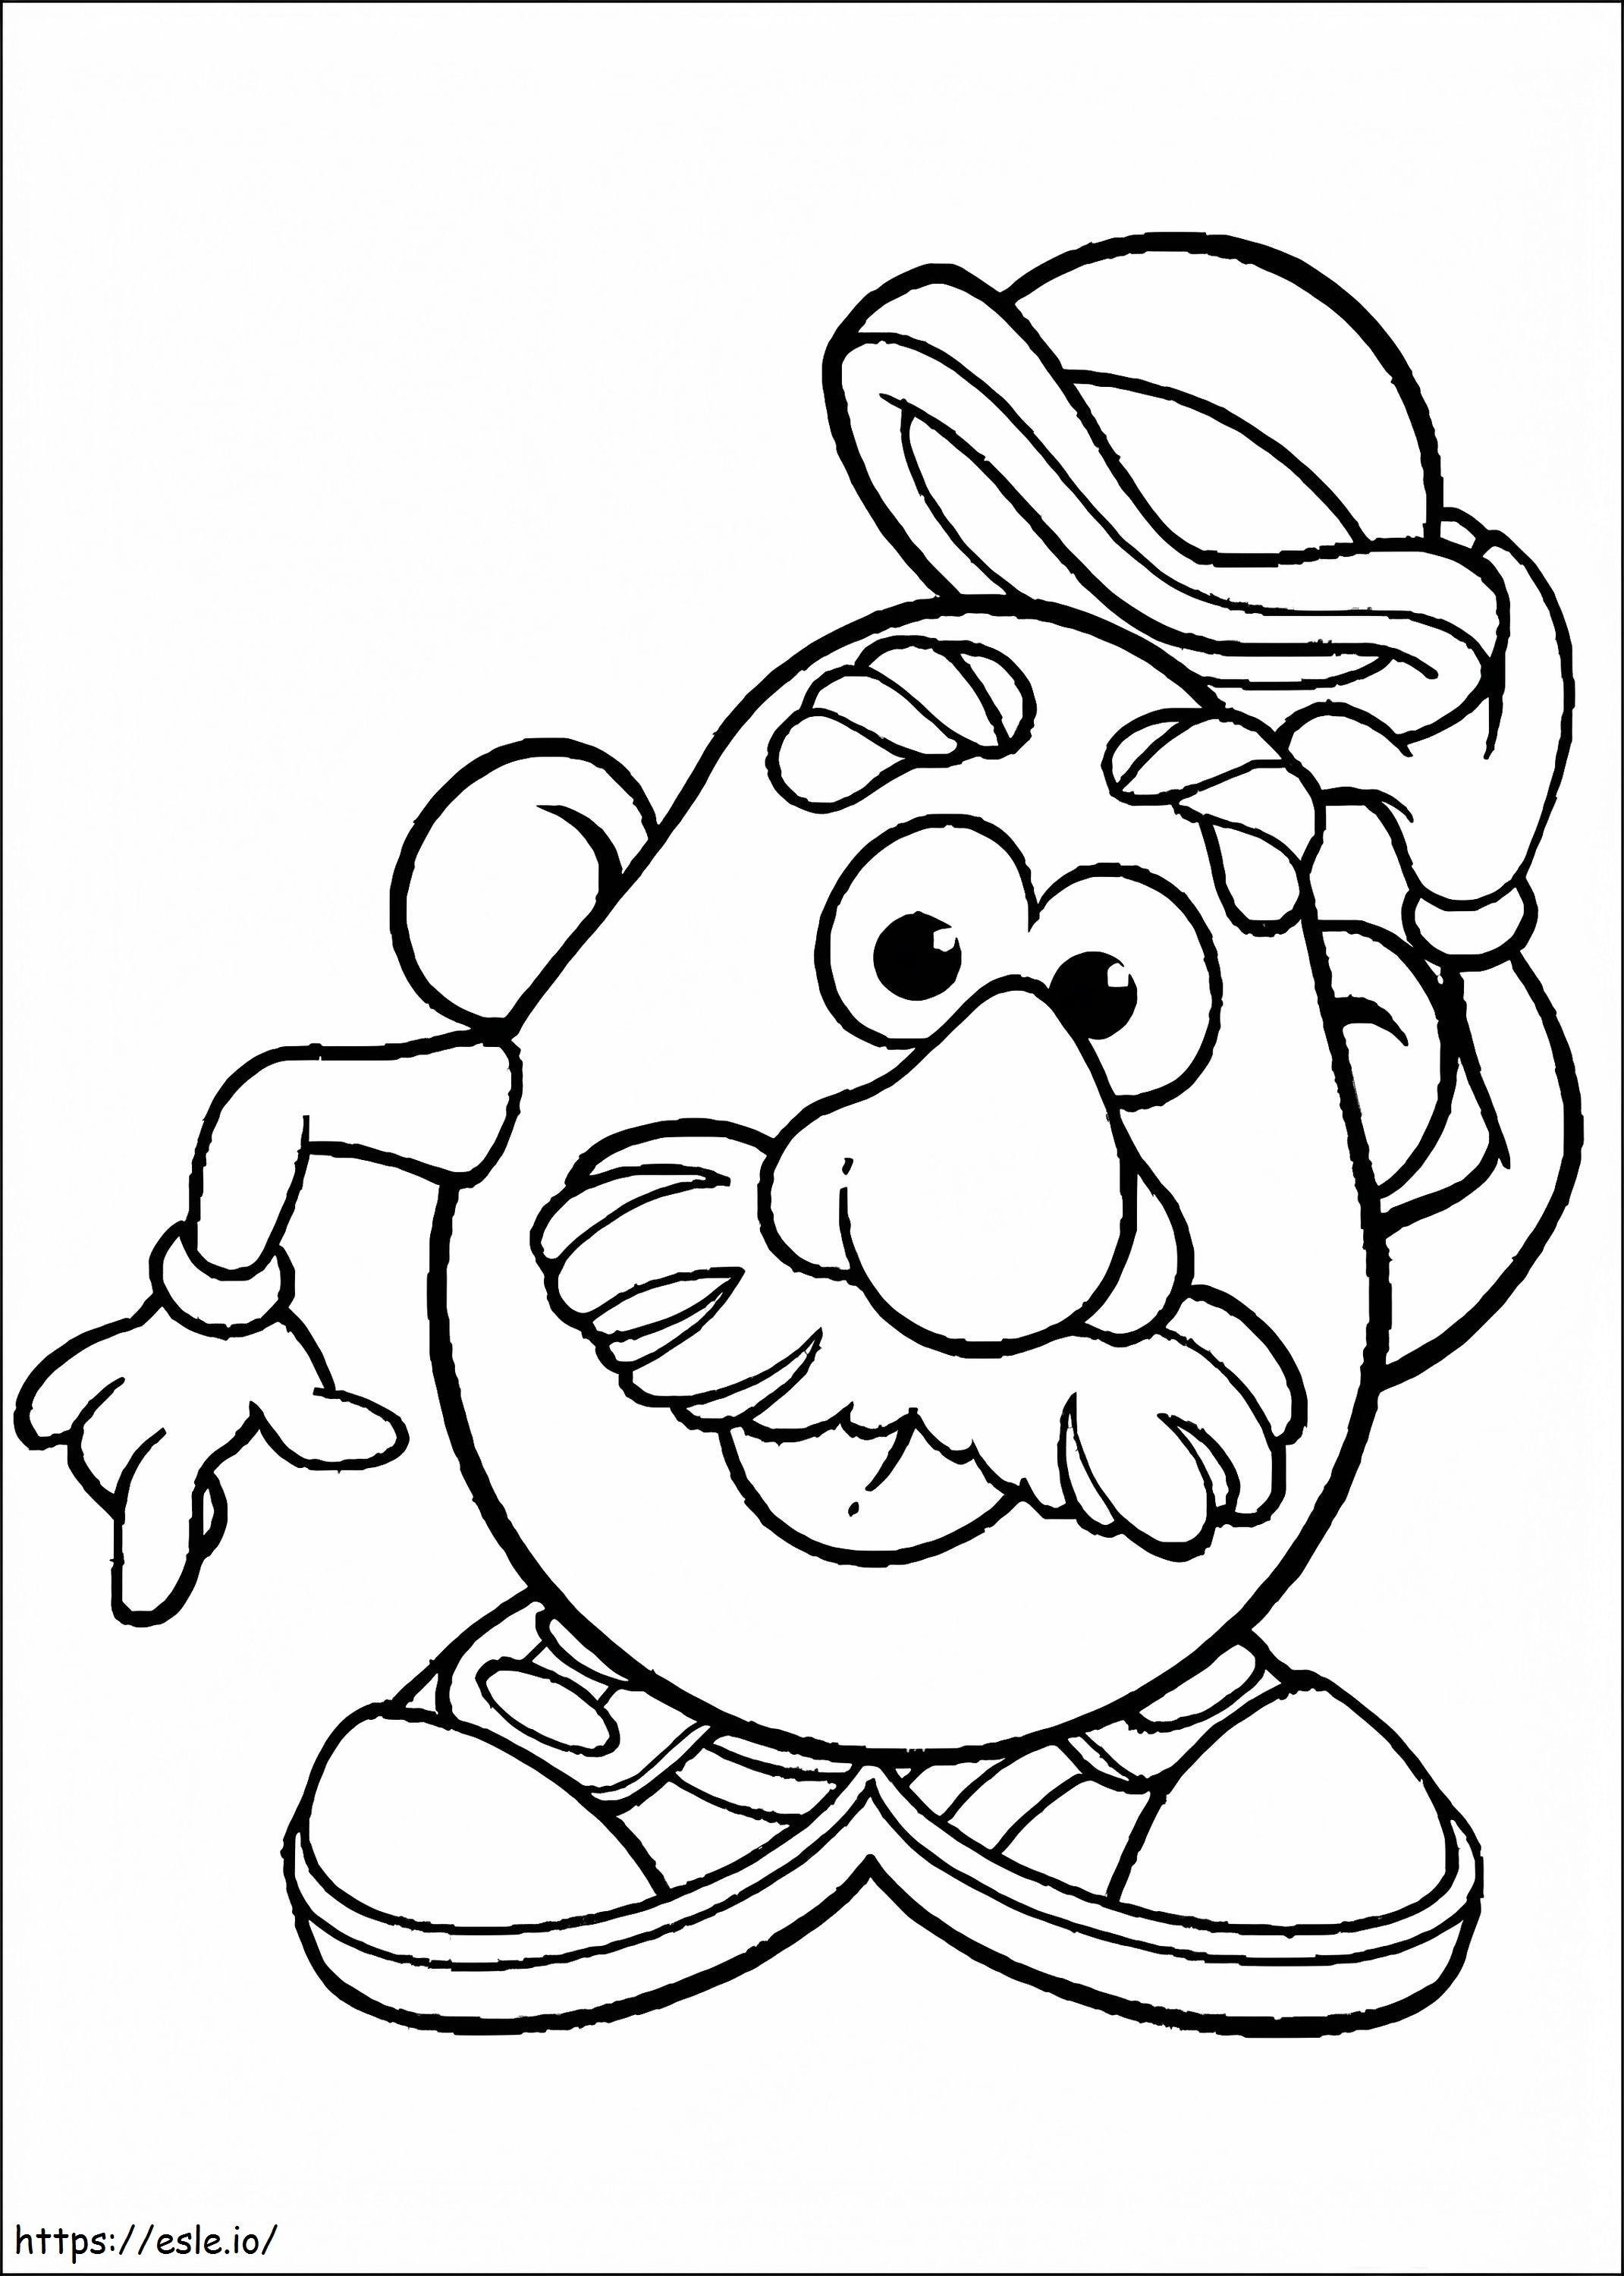 Coloriage Libérez M. Potato Head à imprimer dessin